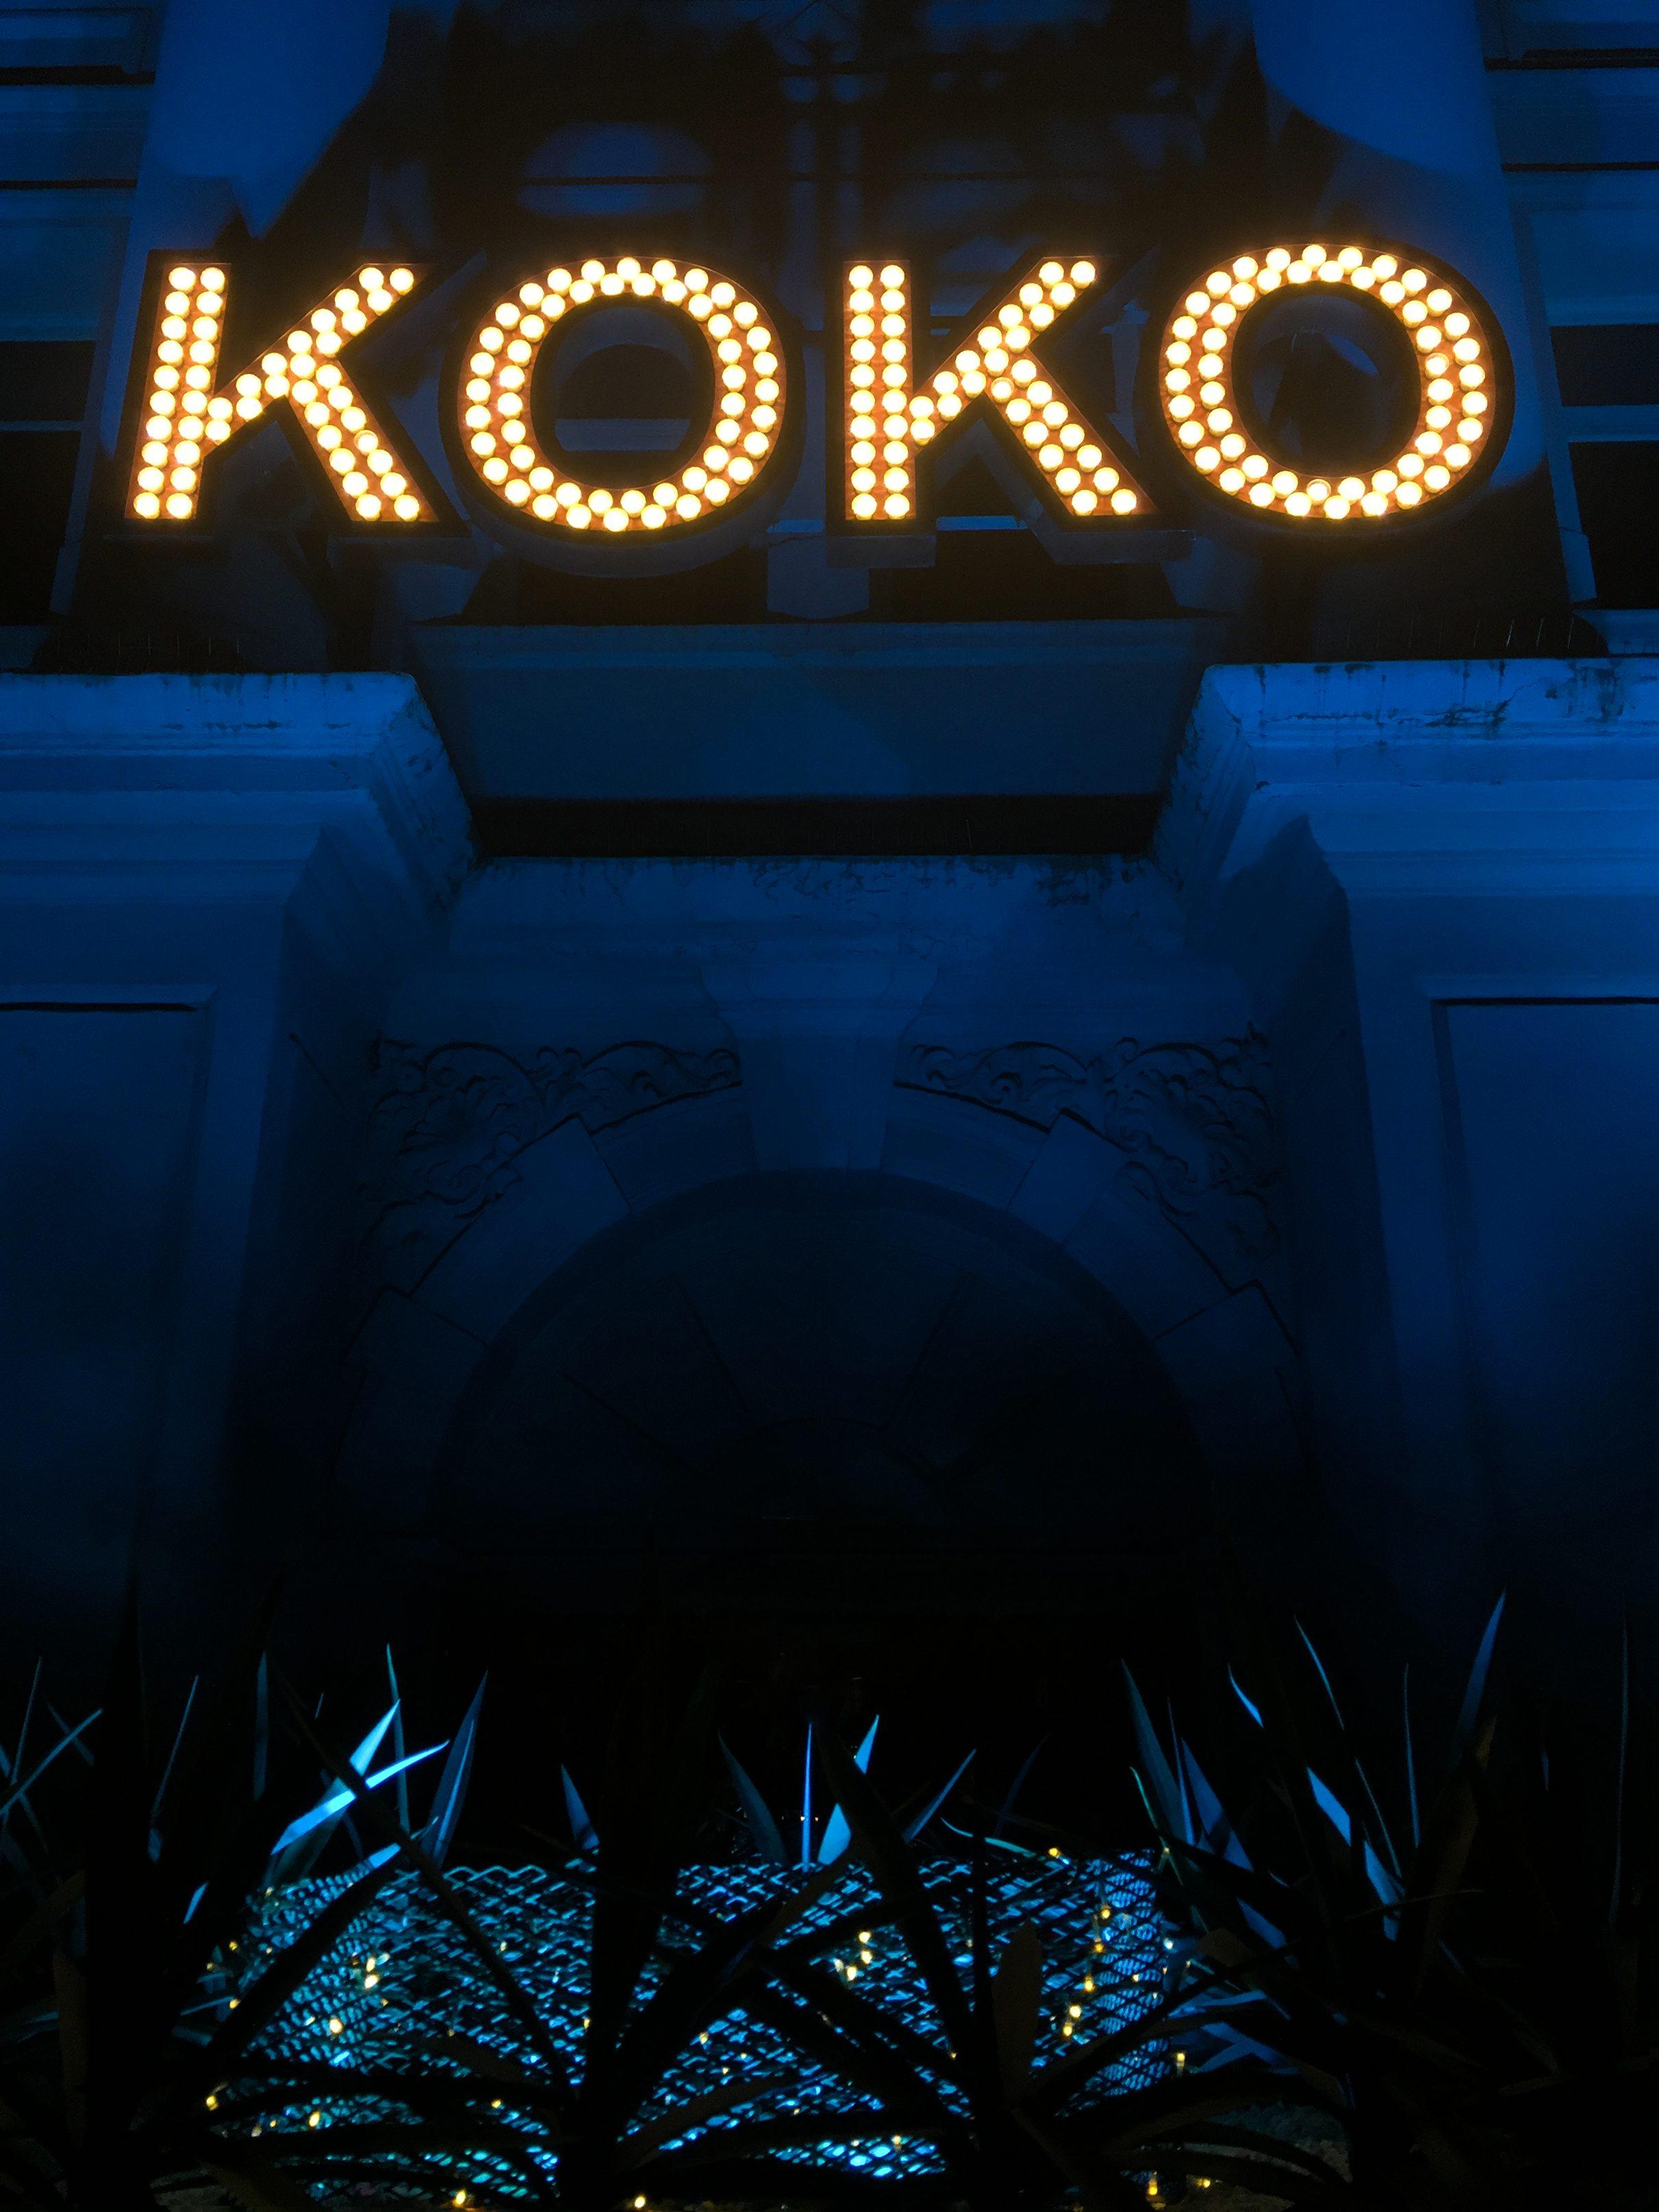 Letztes Jahr beim #Konzert im #Koko wohl eine der schönsten Locations in #London #Camden die ich bisher gesehen habe.